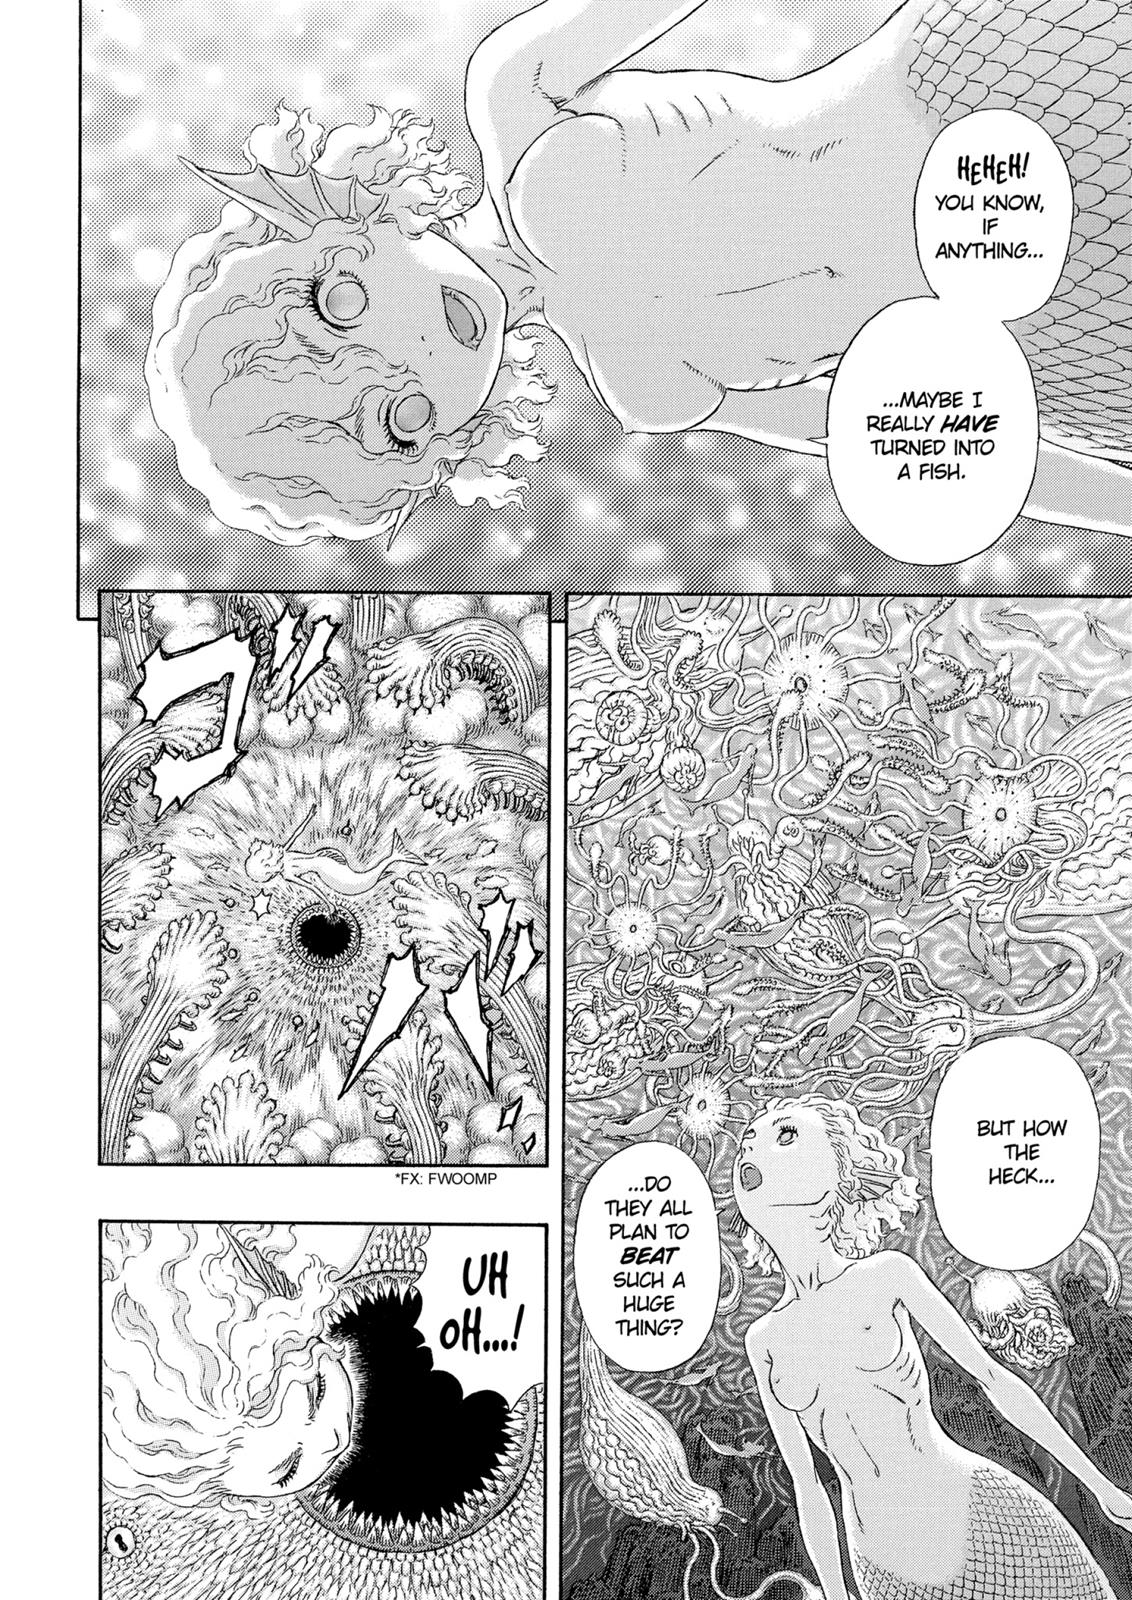 Berserk Manga Chapter 325 image 17